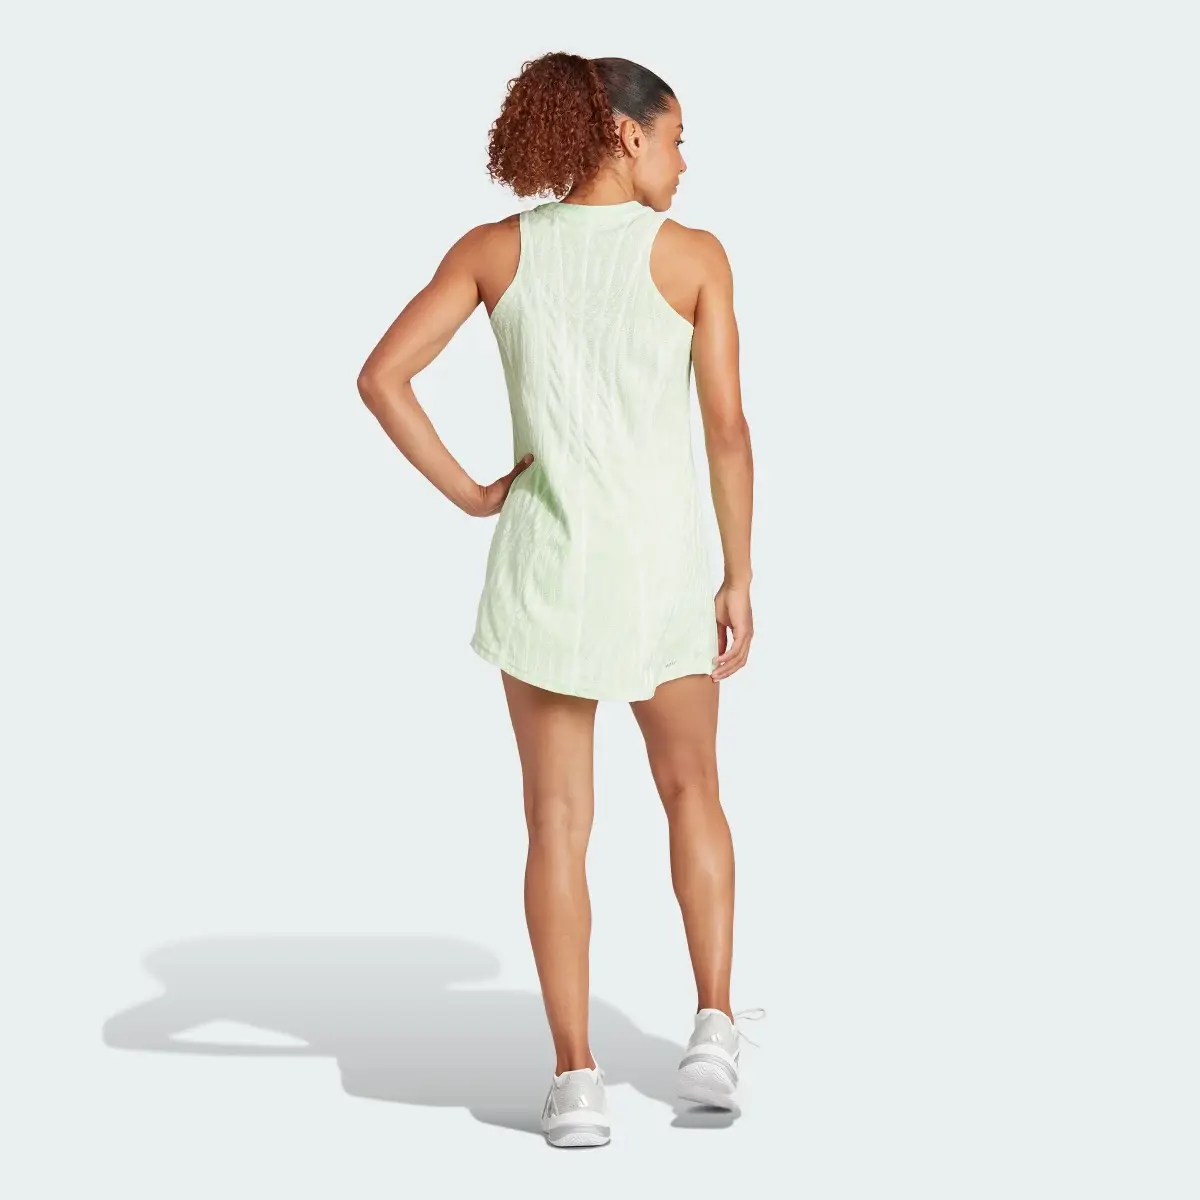 Adidas Tennis Airchill Pro Dress. 3